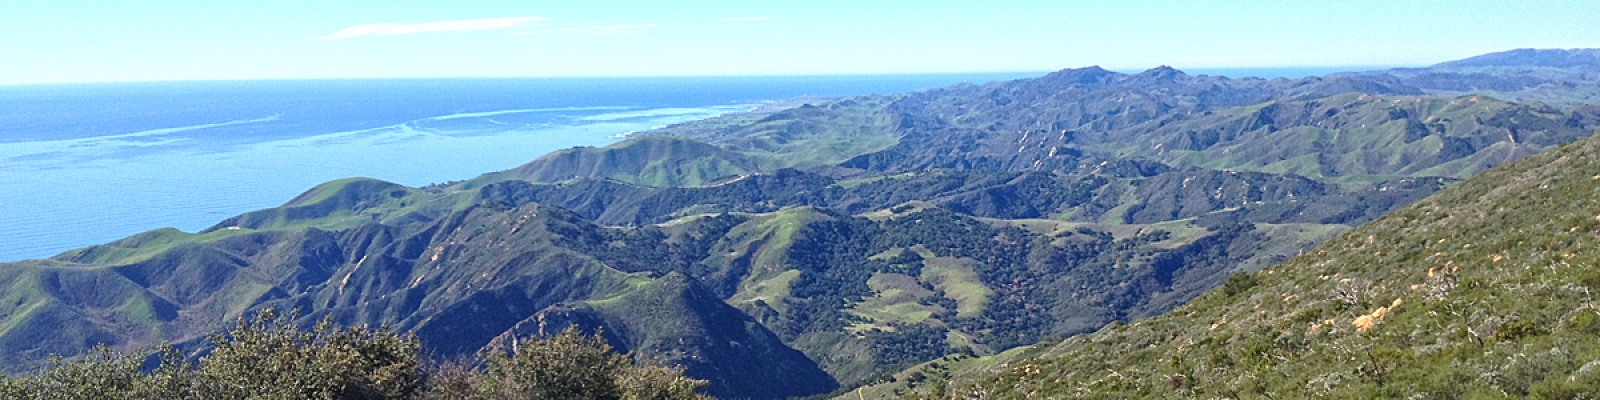 View from Gaviota Peak